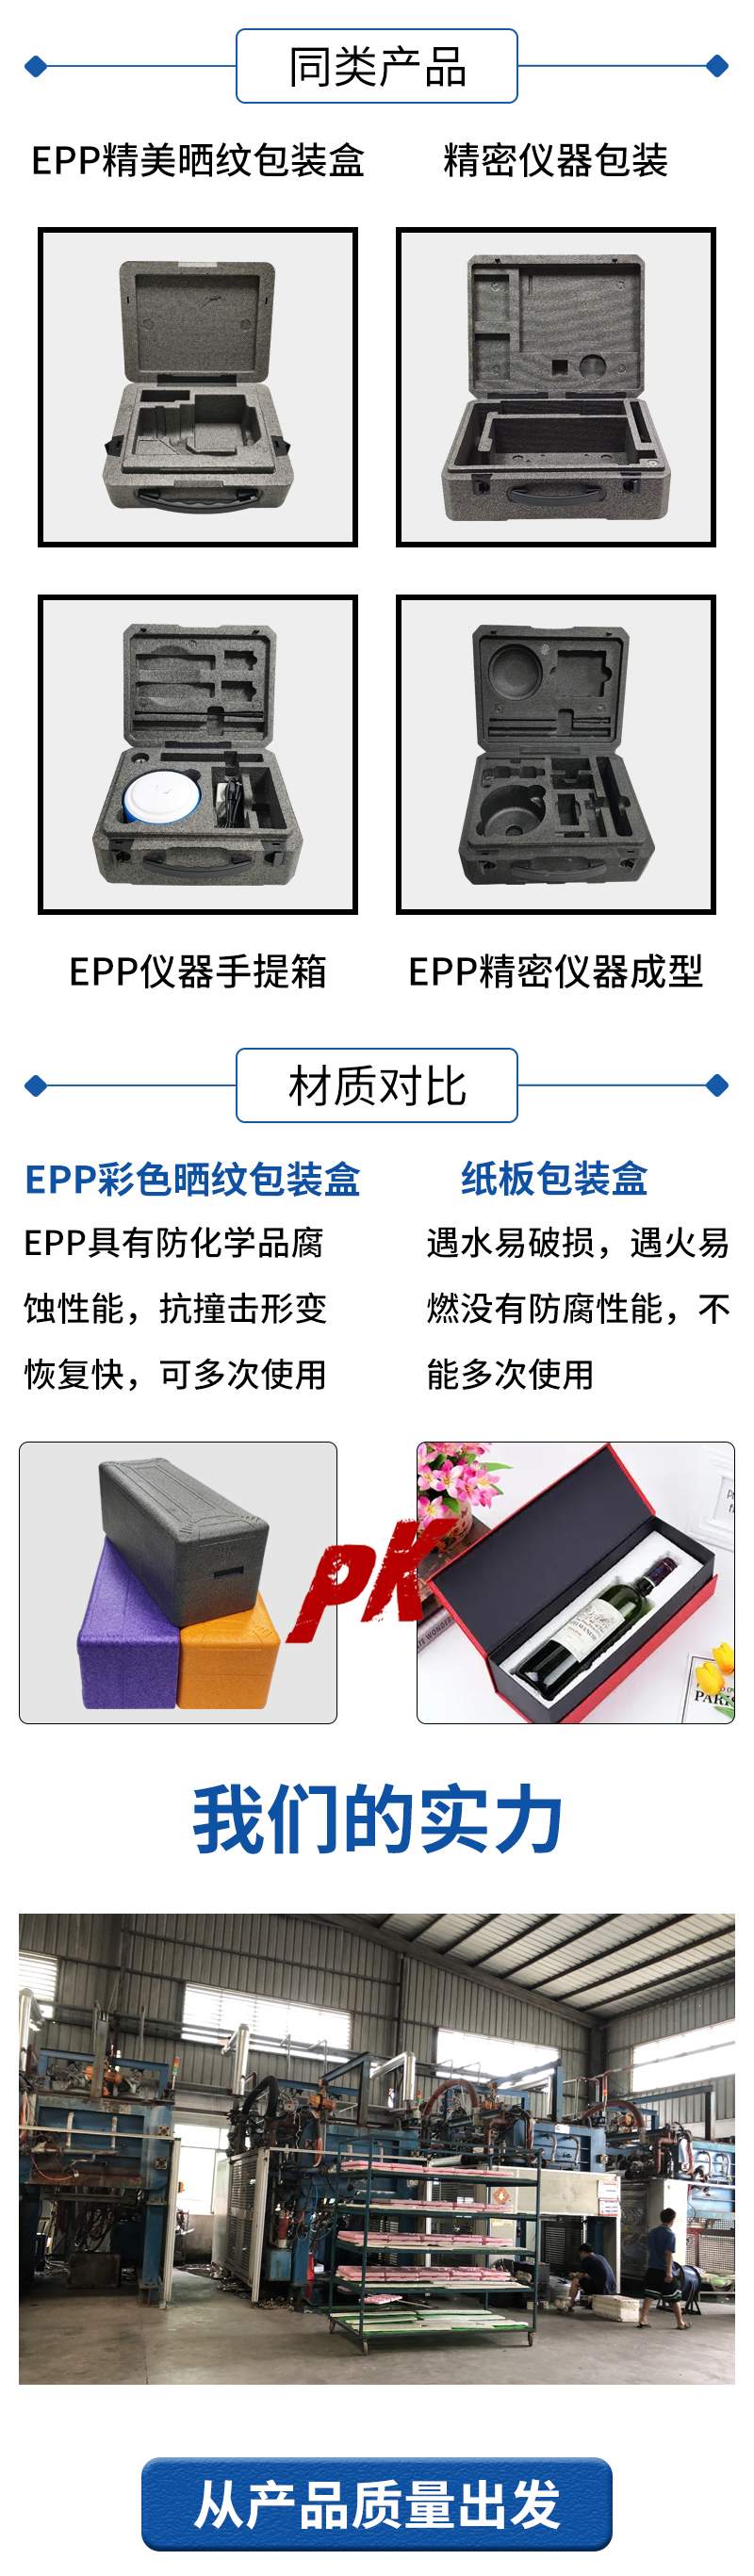 官网EPP彩色晒纹包装盒9_04.jpg